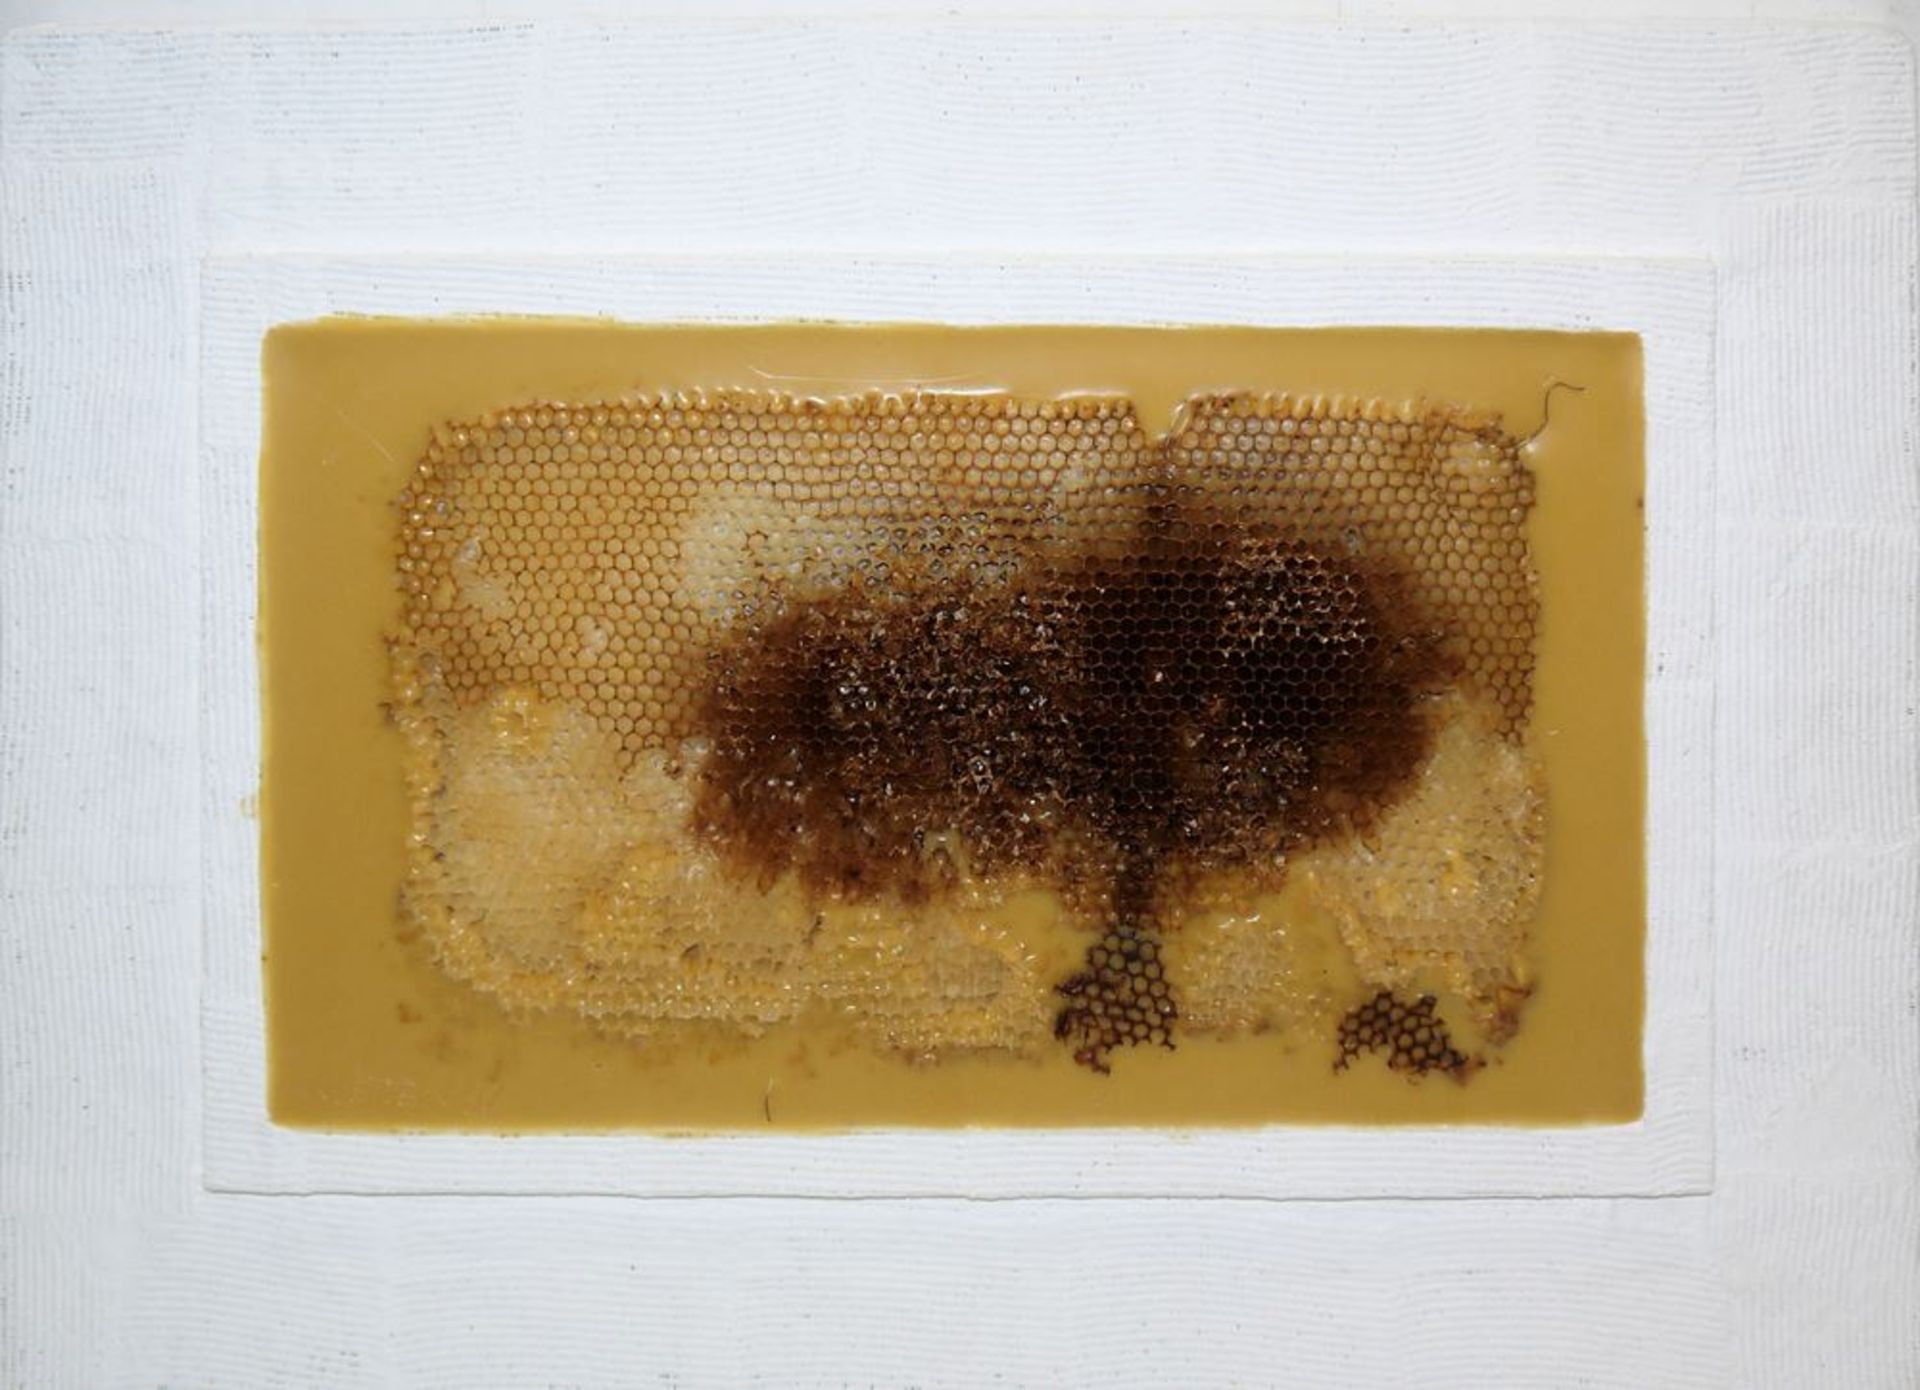 Johannes Metten, "Mutationen in Wachs", 2 signierte Wachs-Reliefs mit Bienenwaben von 1997 - Bild 4 aus 6